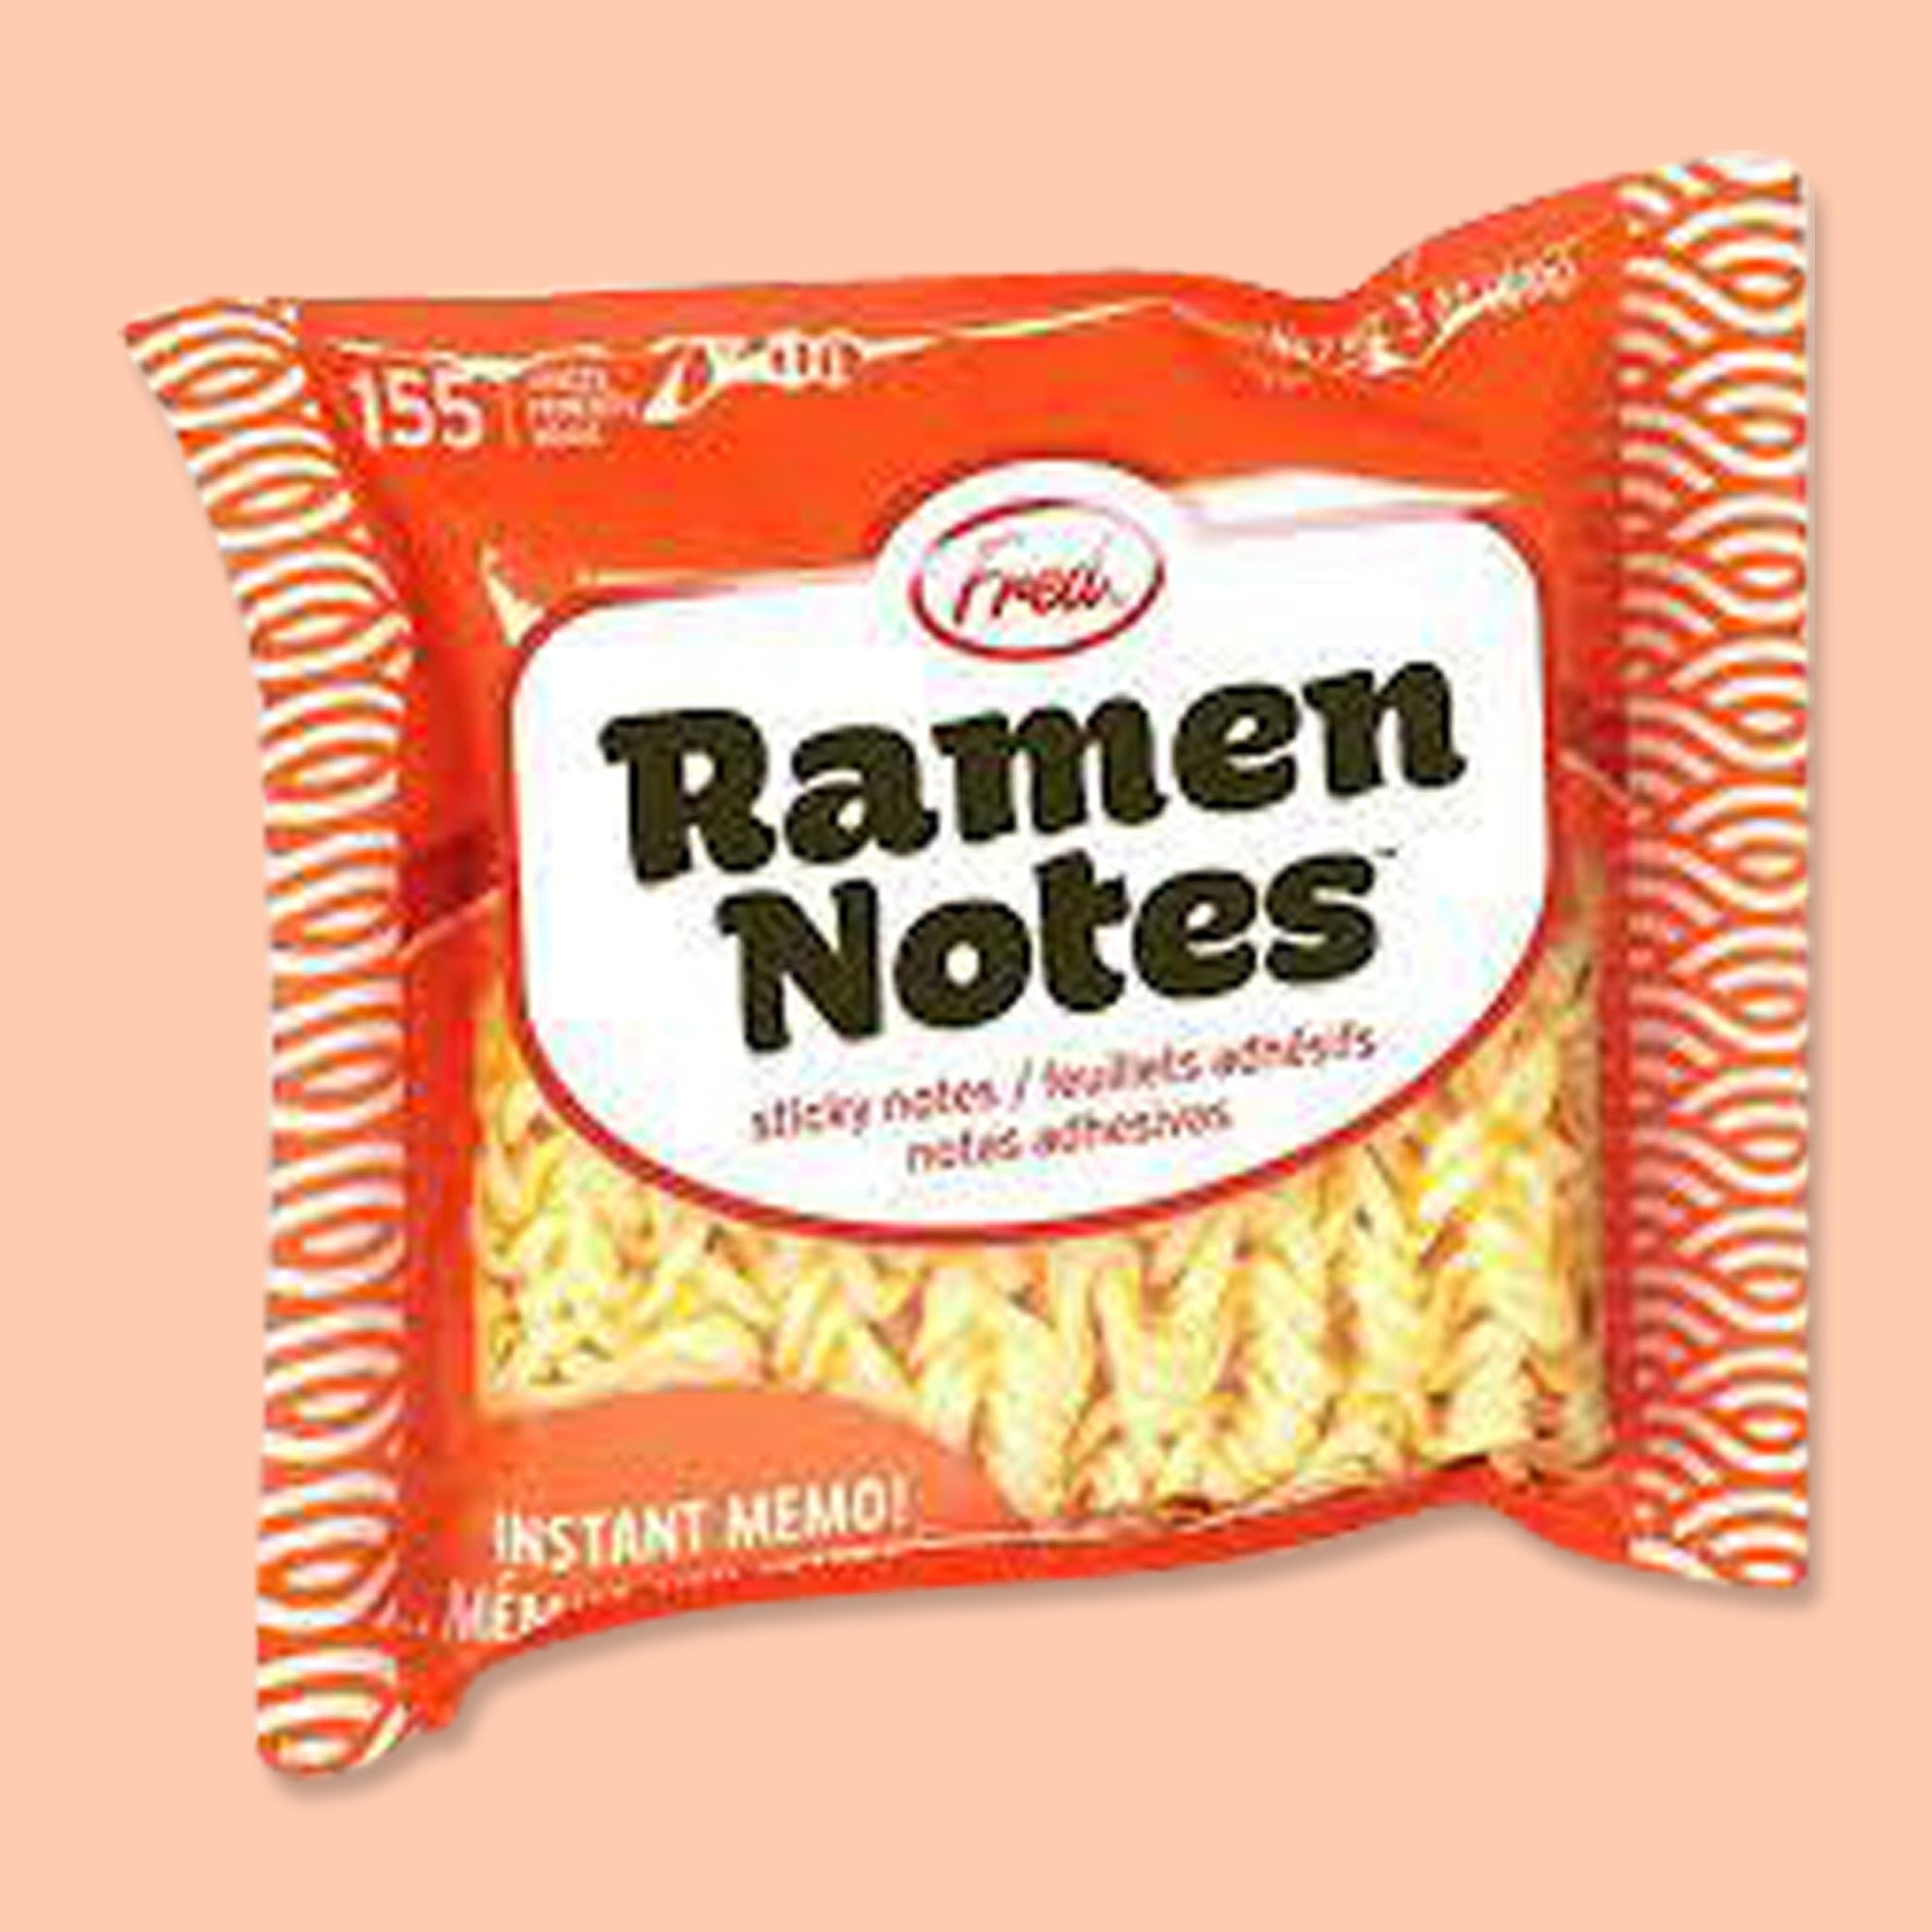 Ramen Notes Sticky Notes